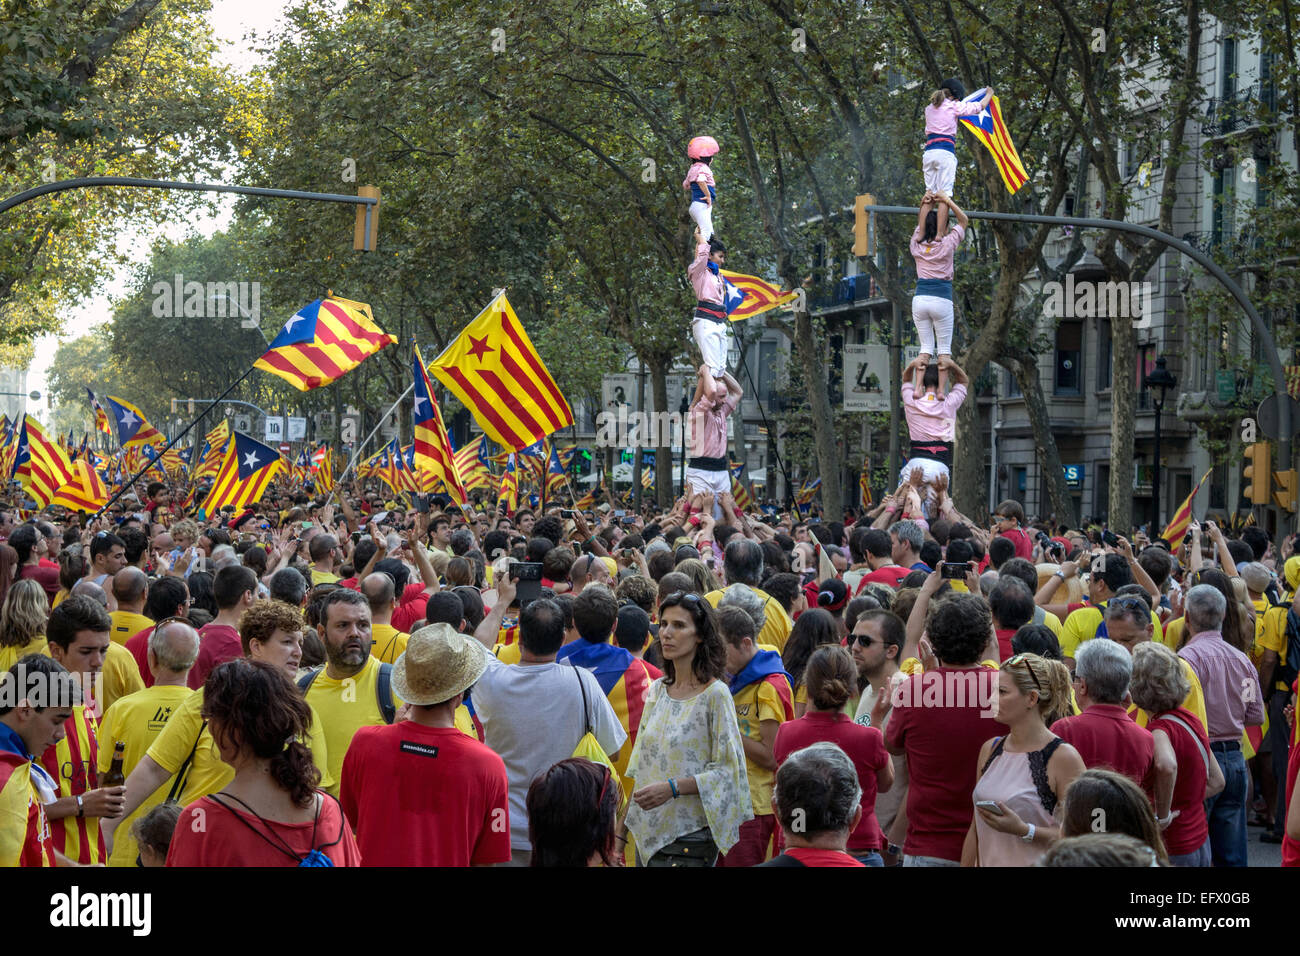 Barcellona, Spagna - sept. 11: la gente celebra l'indipendenza sulla strada di Barcellona durante la Giornata Nazionale della Catalogna Foto Stock